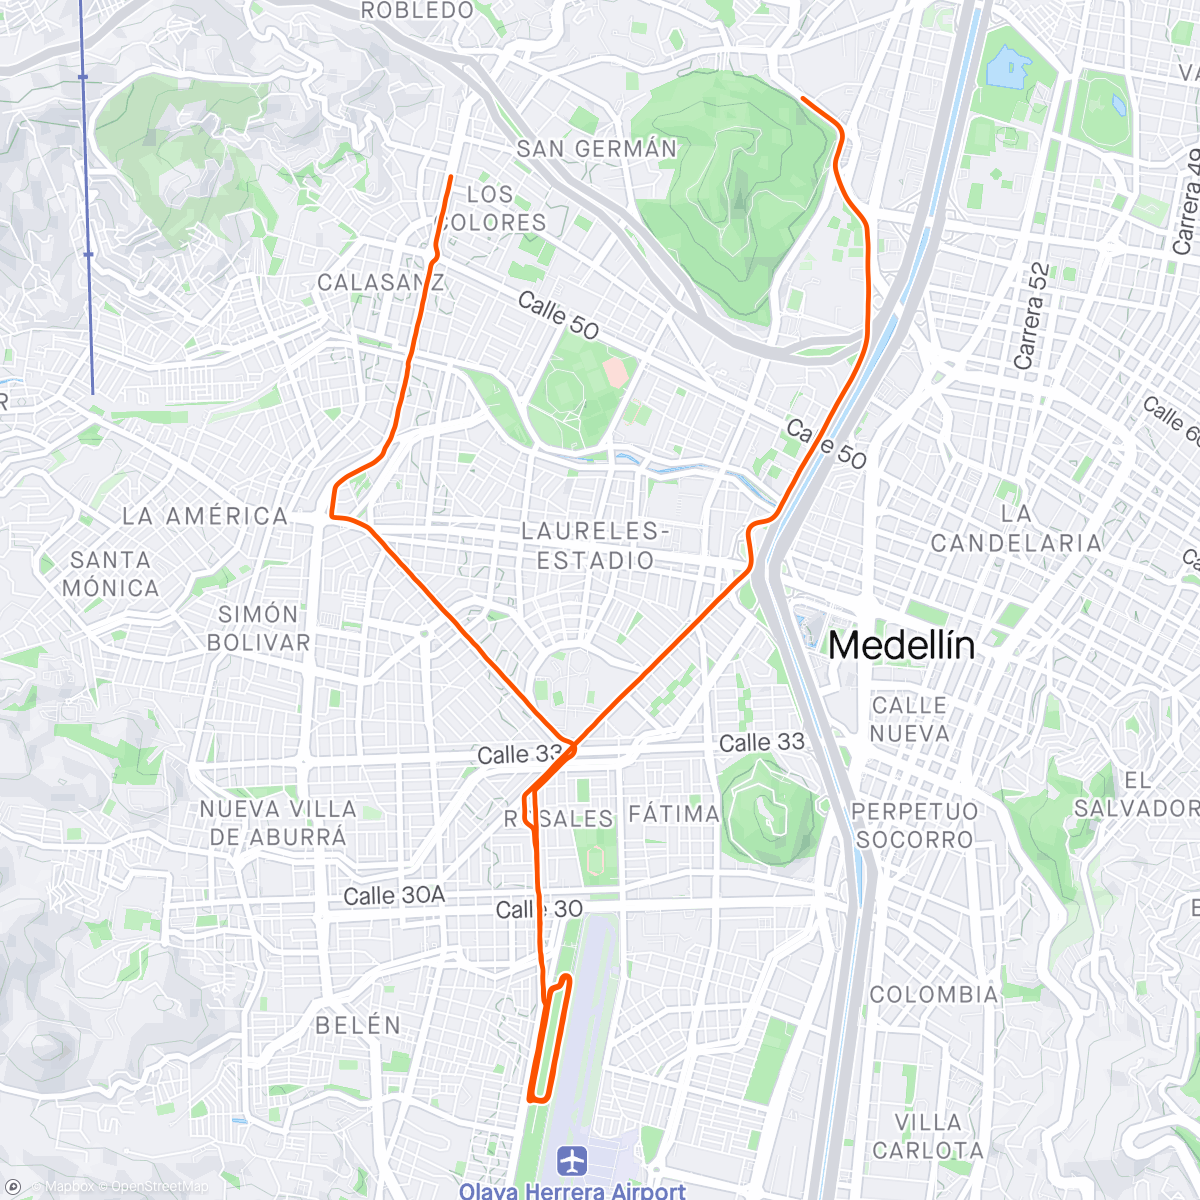 Map of the activity, Vuelta ciclística por la mañana